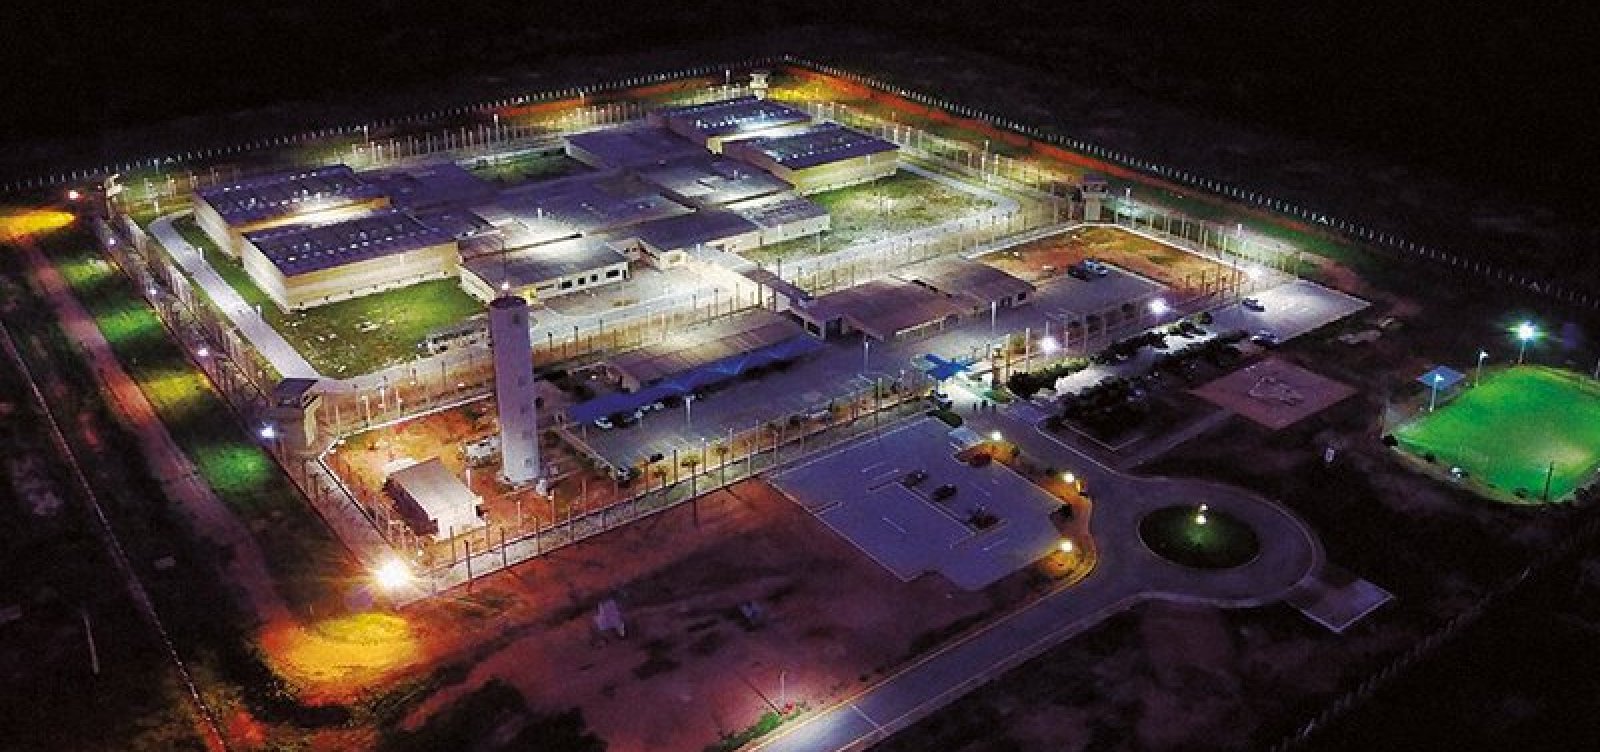 Fugitivos saíram pelo teto das celas em penitenciária de Mossoró, aponta investigação 